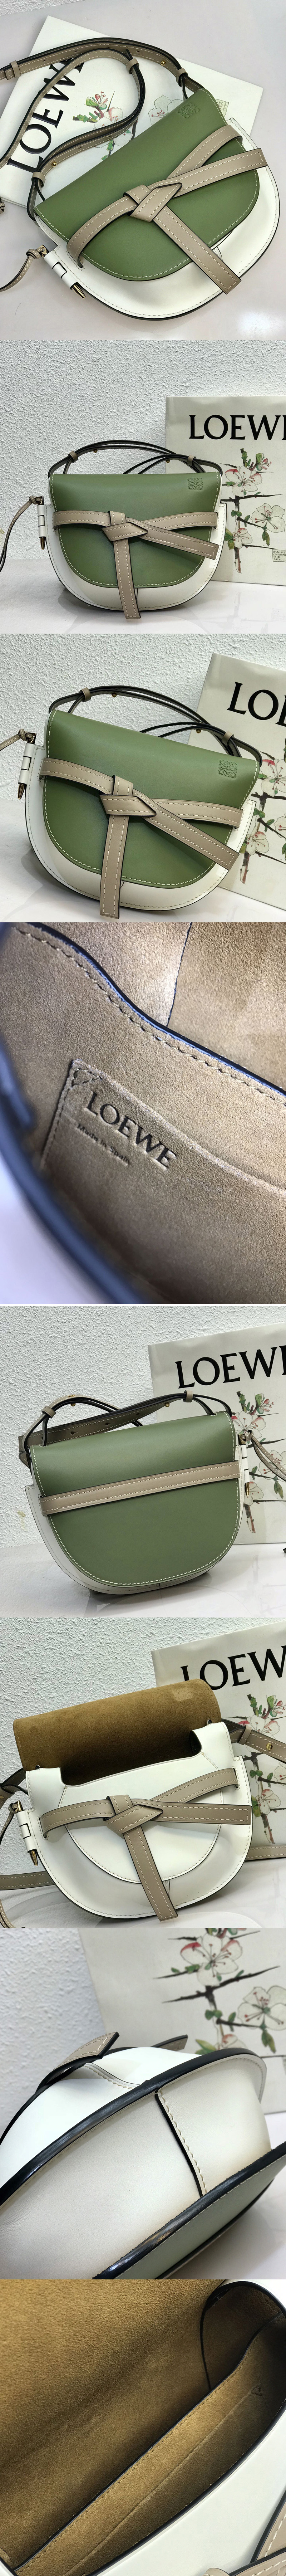 Replica Loewe Bags